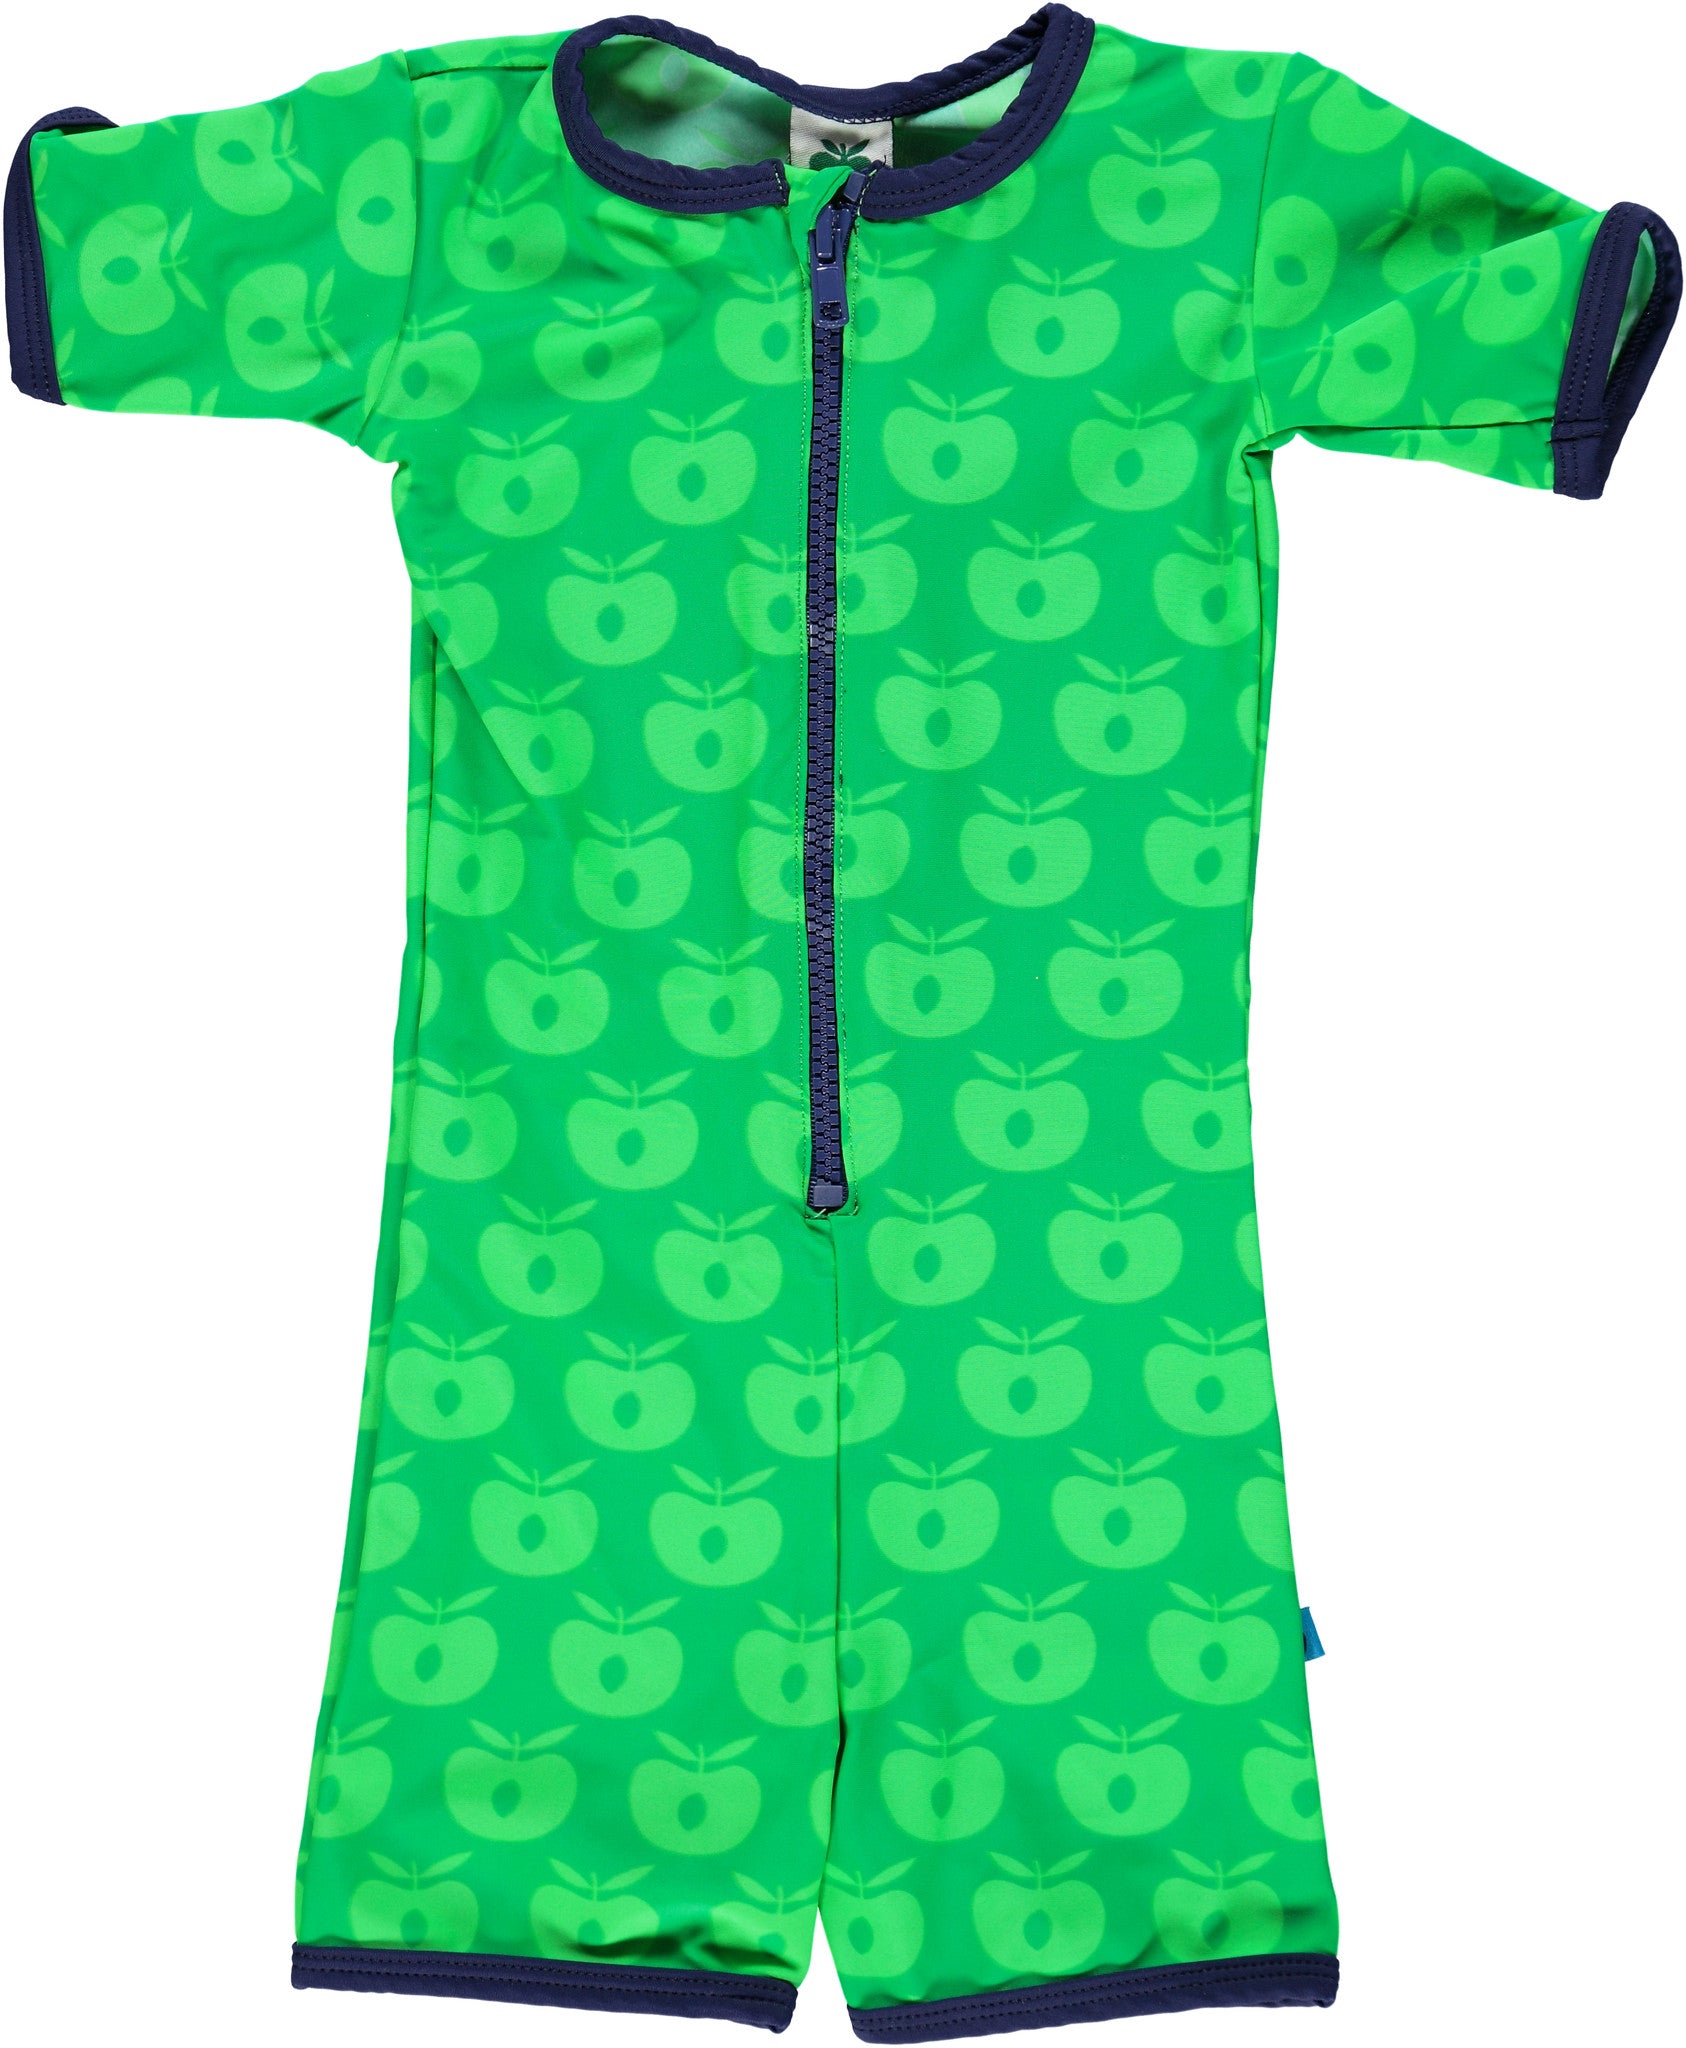 Smafolk UV-Suit Groen Appels - GOEDvanToen - Eerlijke & biologische kinderkleding en babykleding